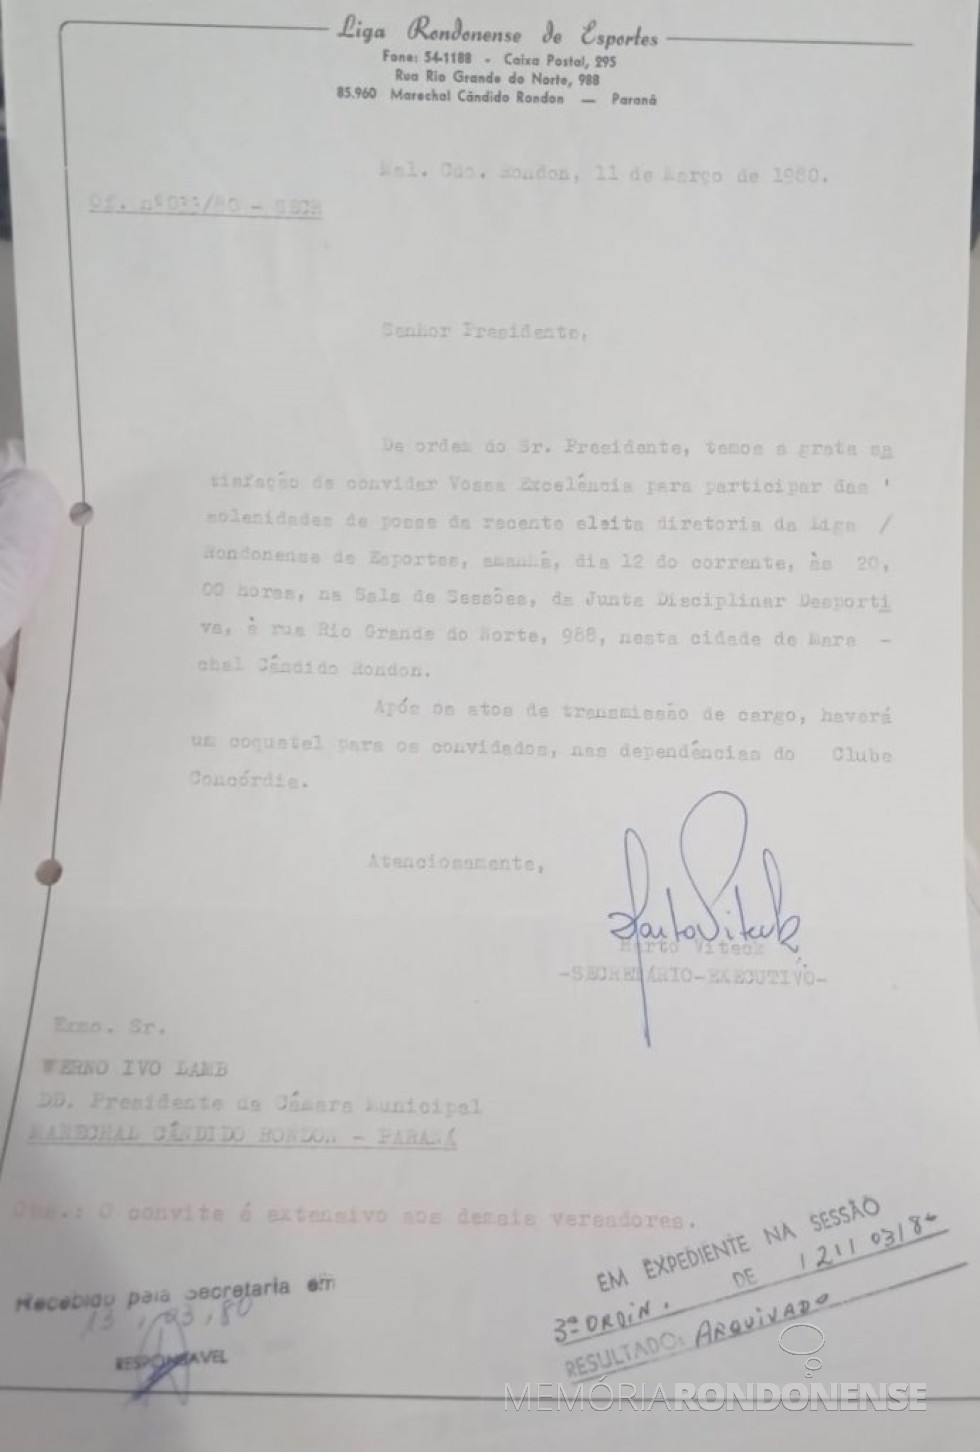 || Cópia do convite expedido pela Liga Rondonense de Esportes para a posse da nova diretoria, em março de 1980.
Imagem: Acervo Câmara Municipal de Marechal Cândido Rondon - FOTO 11 -